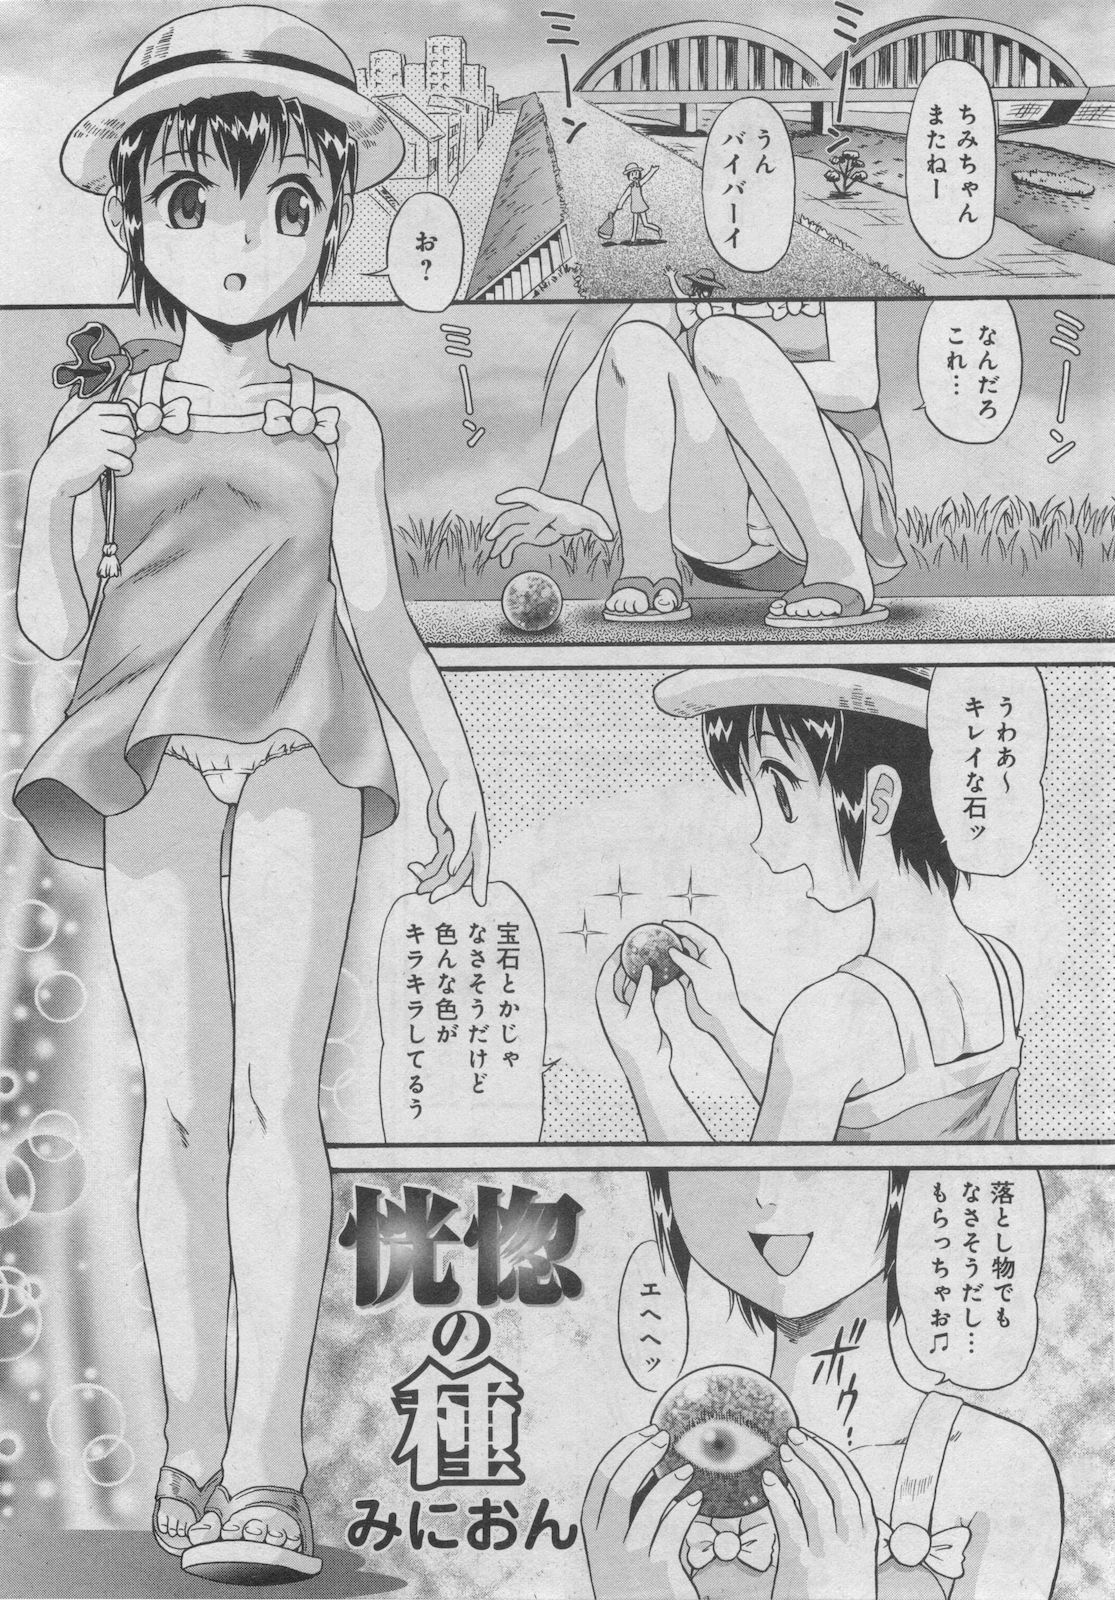 プチマガジン コミックモエマックスJr. Vol.2 2009年10月号